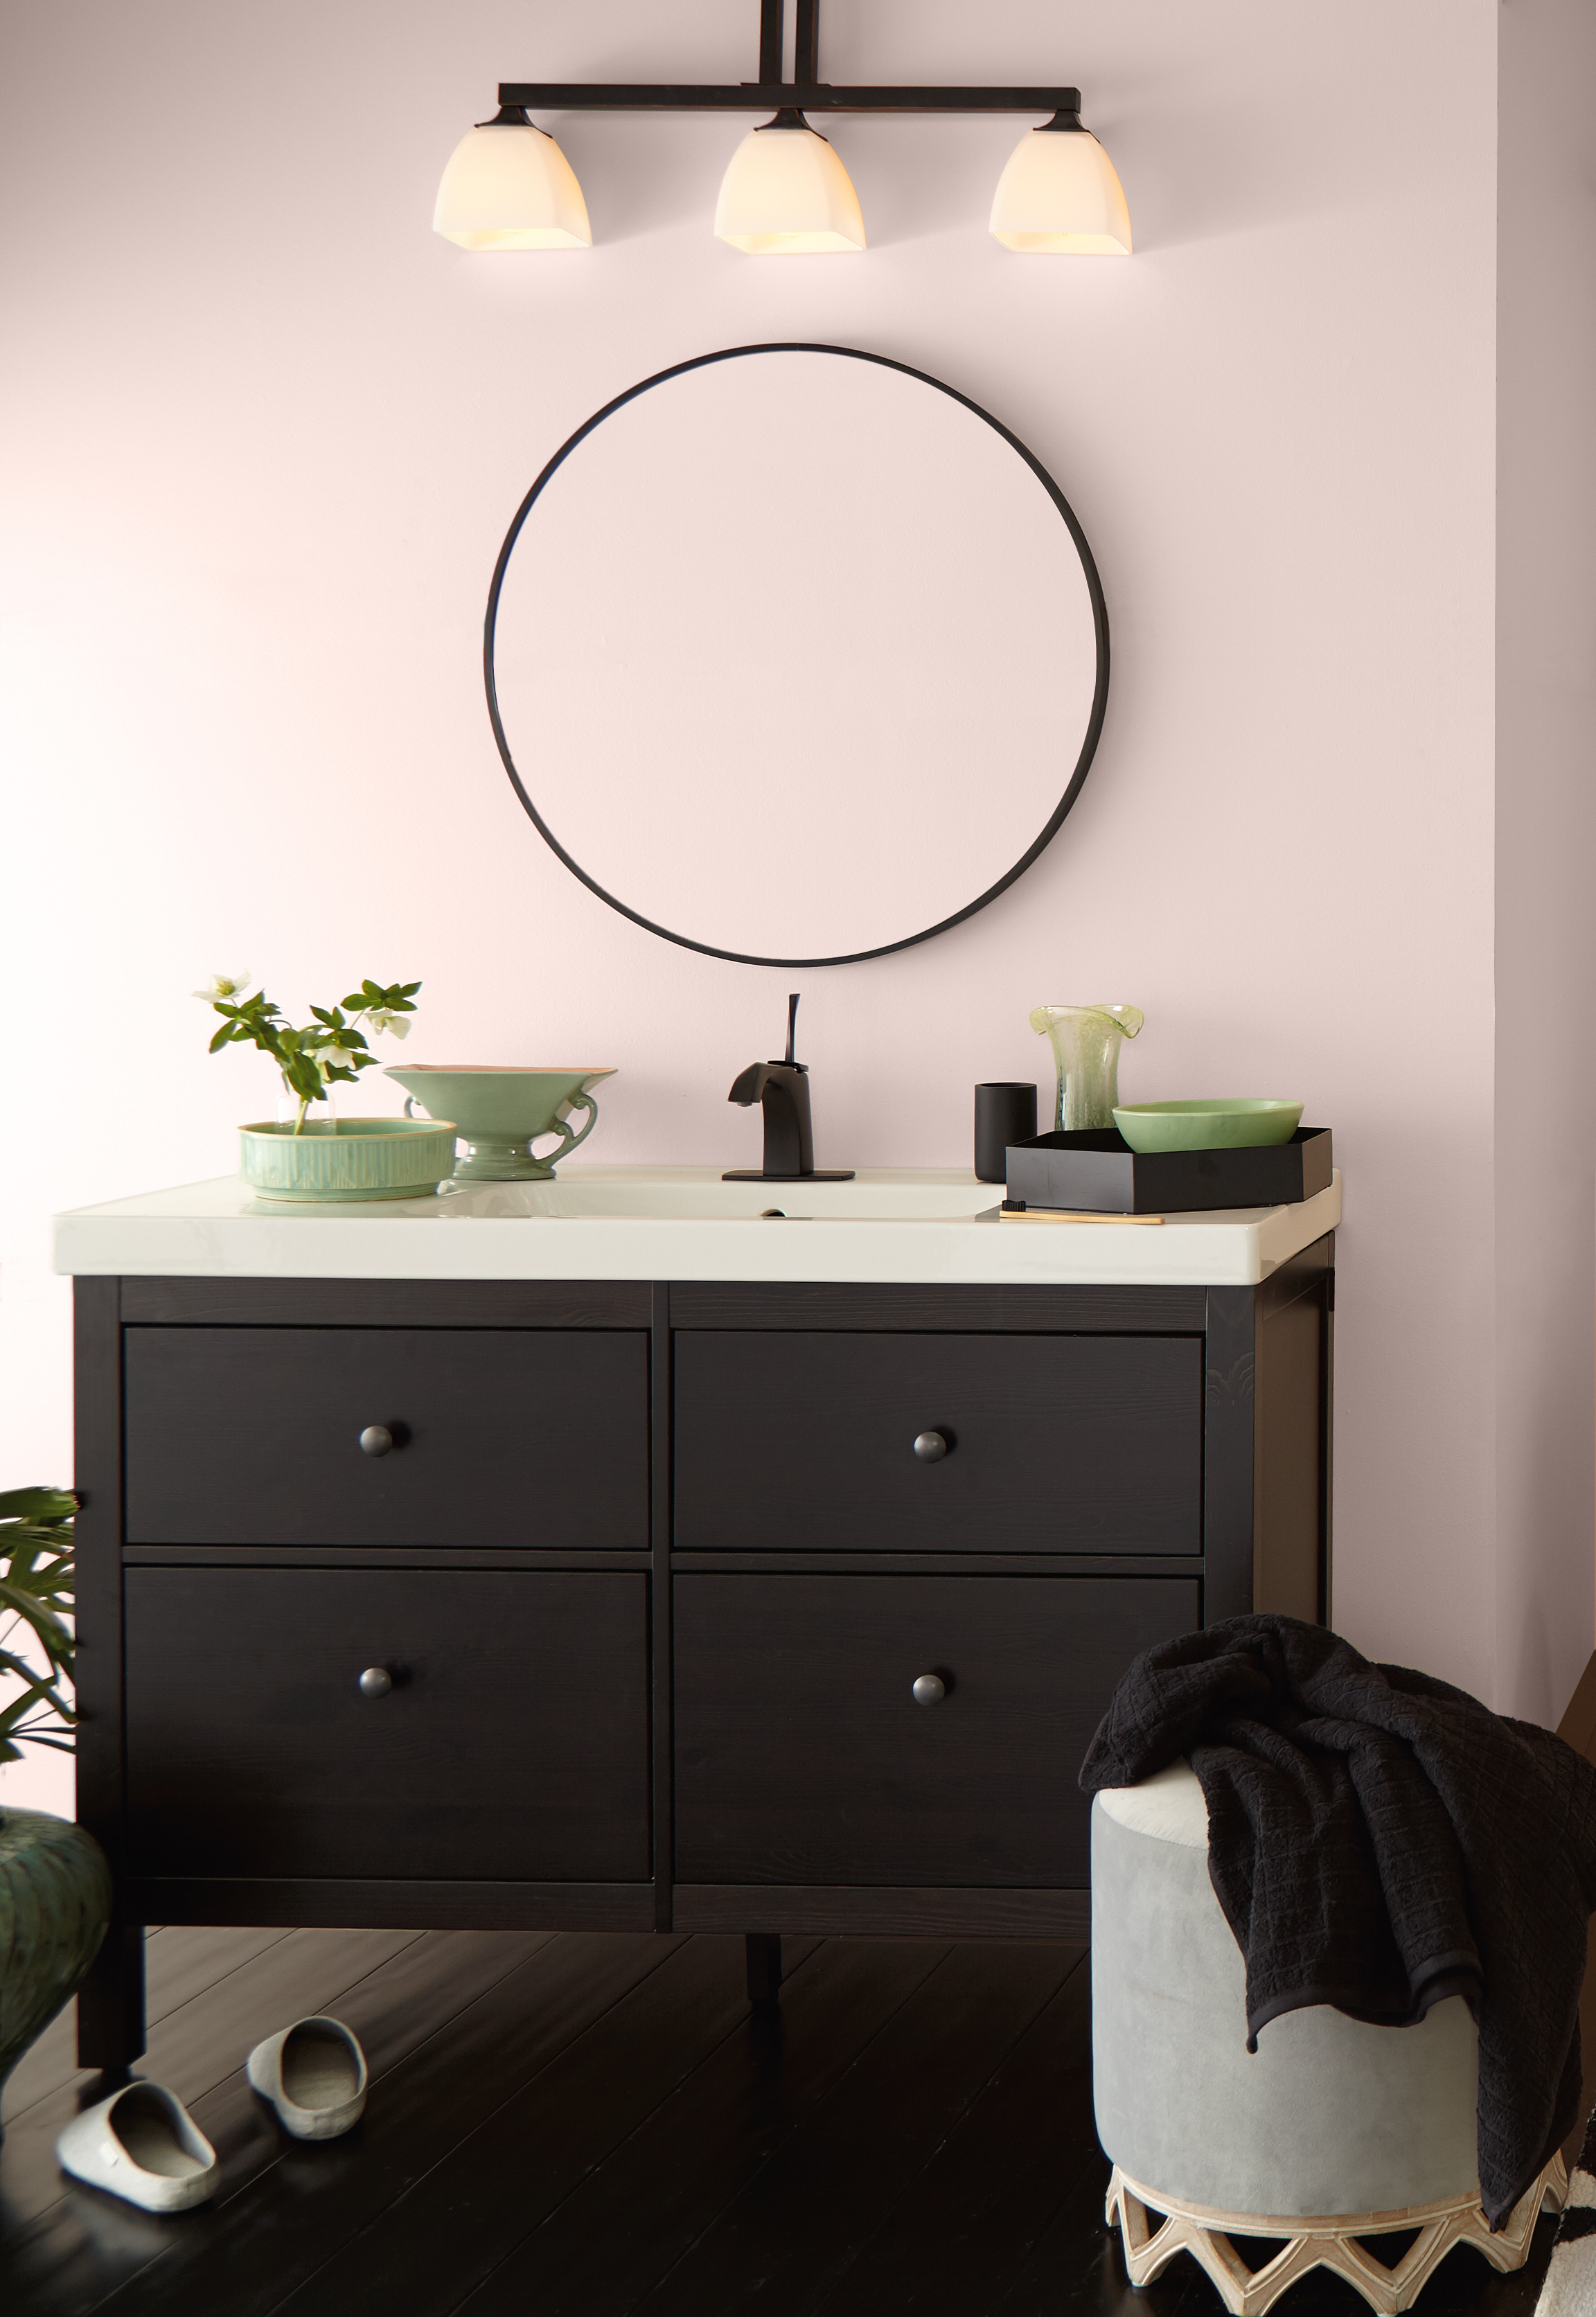 Une salle de bain met en valeur le meuble-lavabo décoré d'accents vert sauge. Un miroir circulaire et des murs peints en Baiser volé, un ton délicat de rose clair.